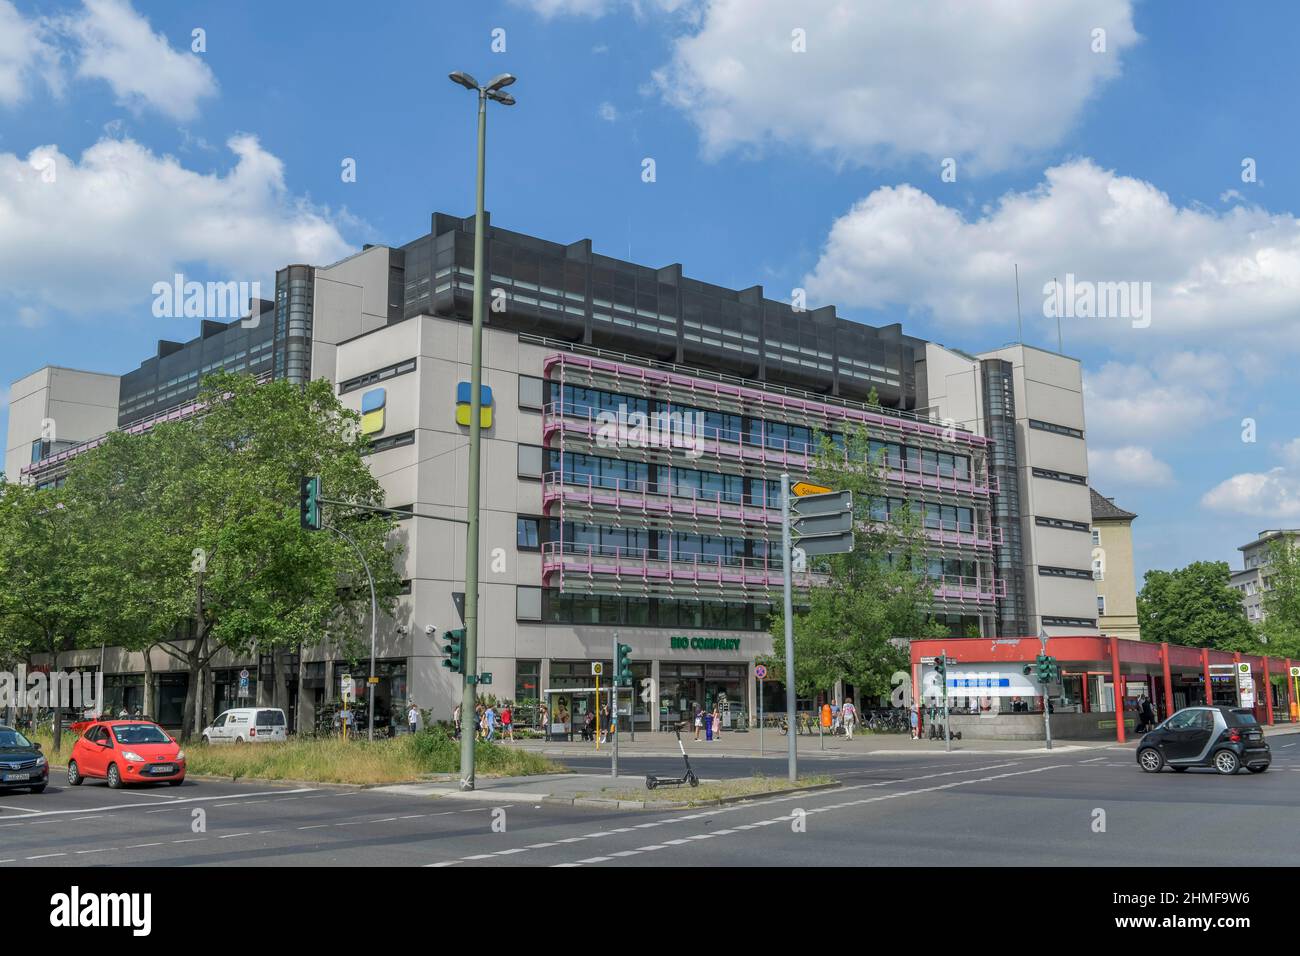 L'assurance pension allemande, Fehrbelliner Platz, Berlin, Berlin, Allemagne Banque D'Images